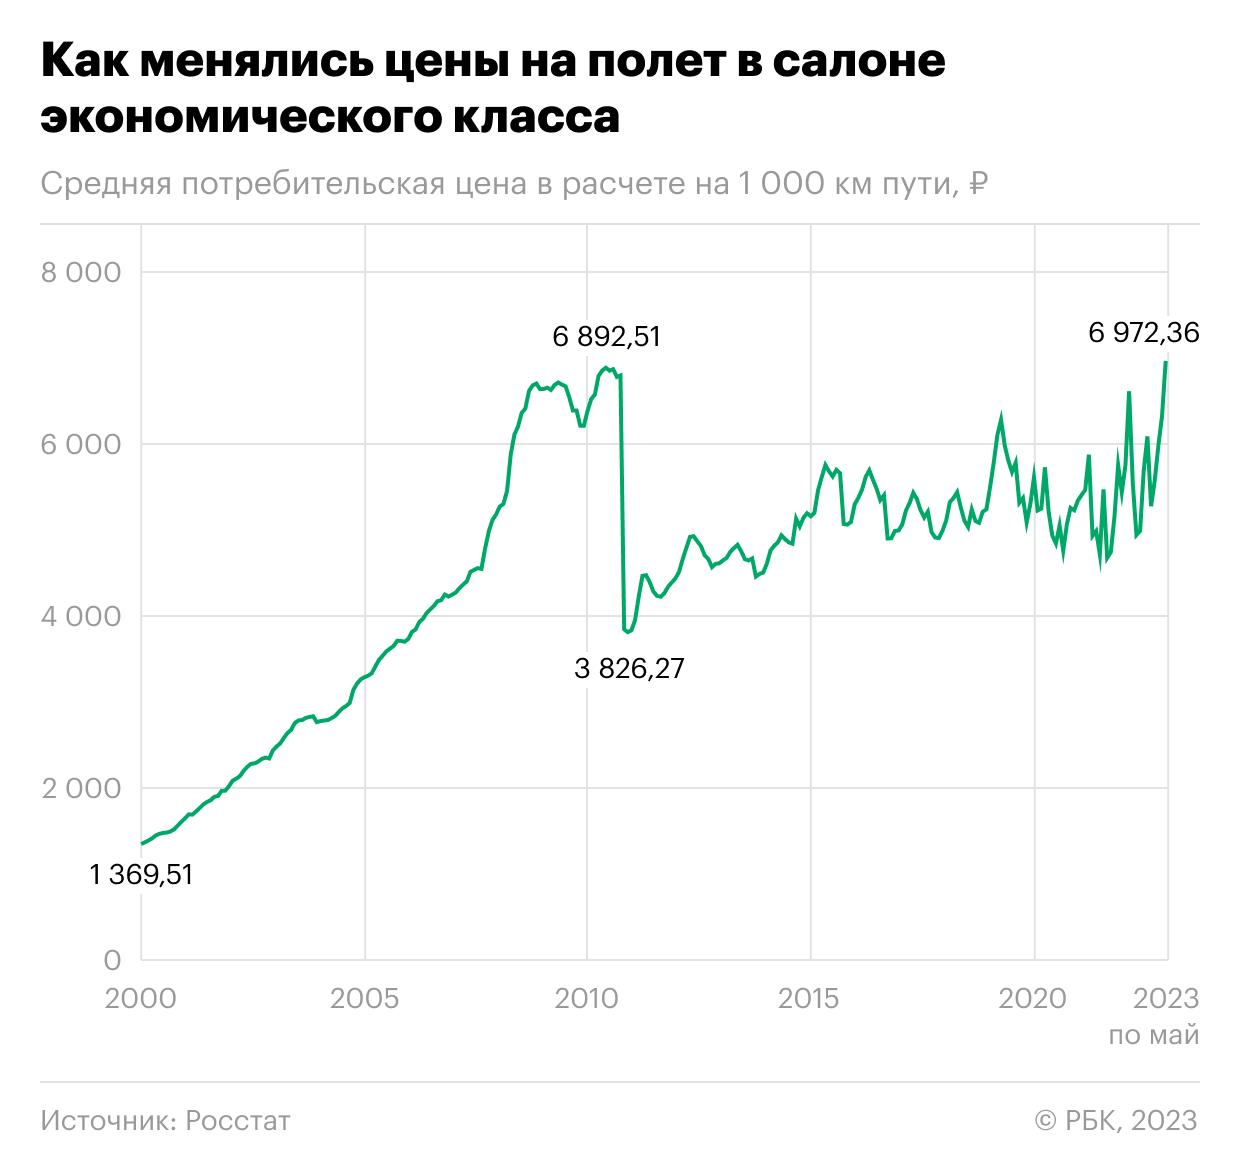 На сколько примерно рублей выросла цена билетов